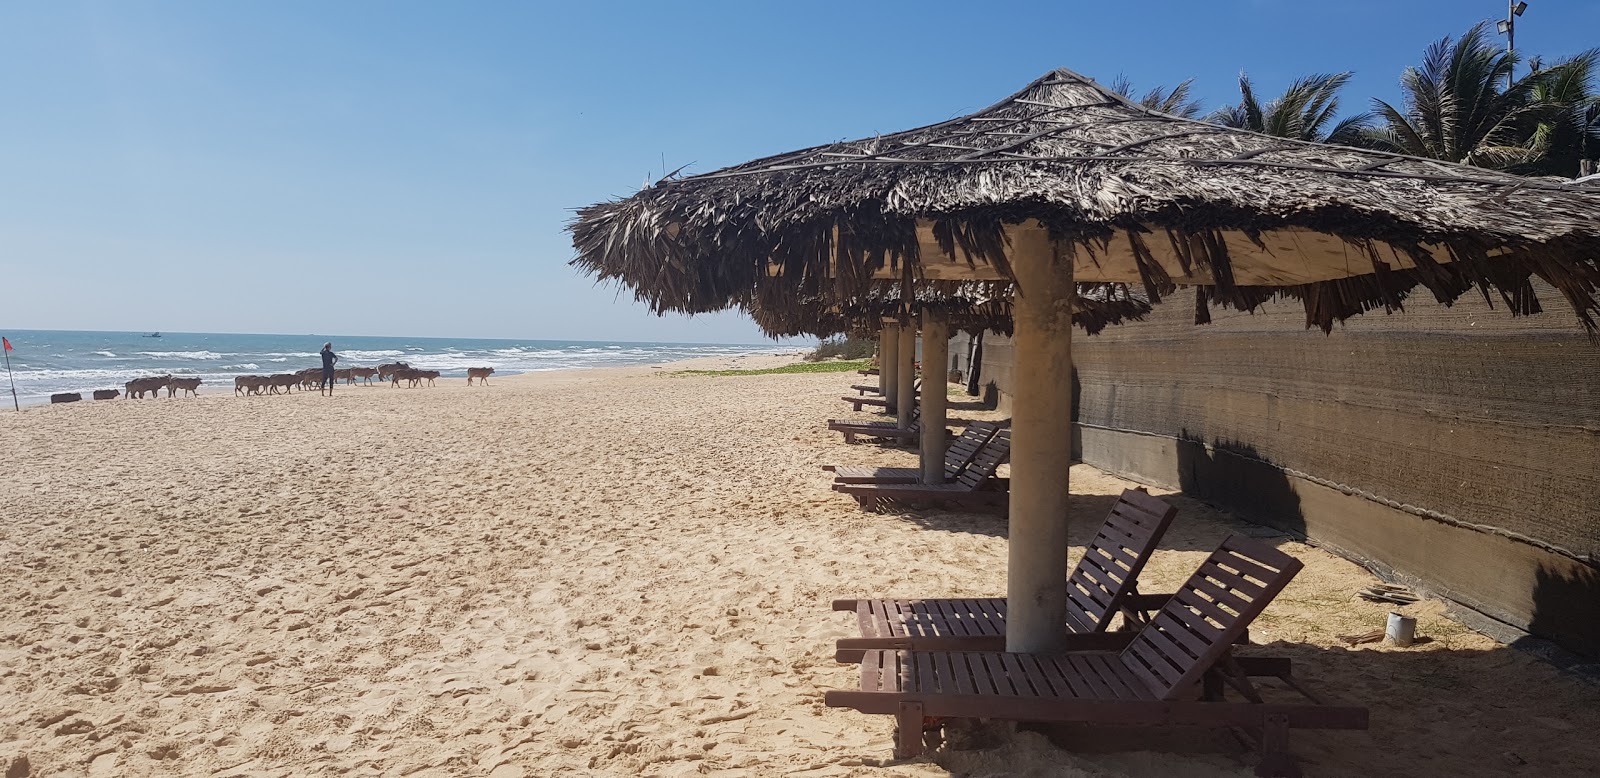 Foto de Aloha Phan Thiet Beach - lugar popular entre os apreciadores de relaxamento